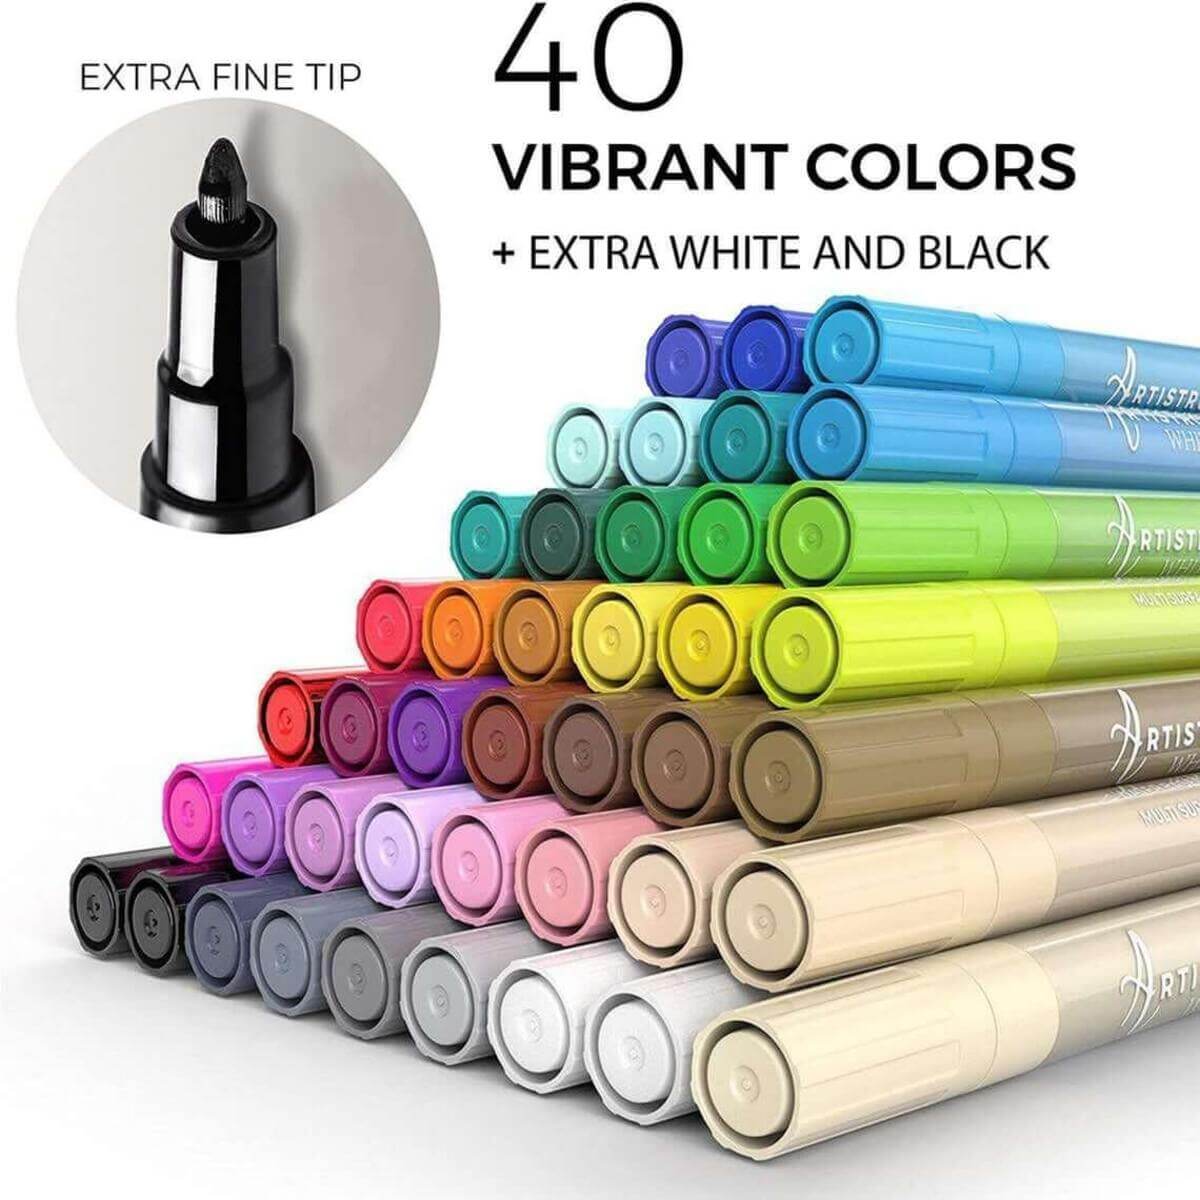 40 vibrant colors_extra white & black